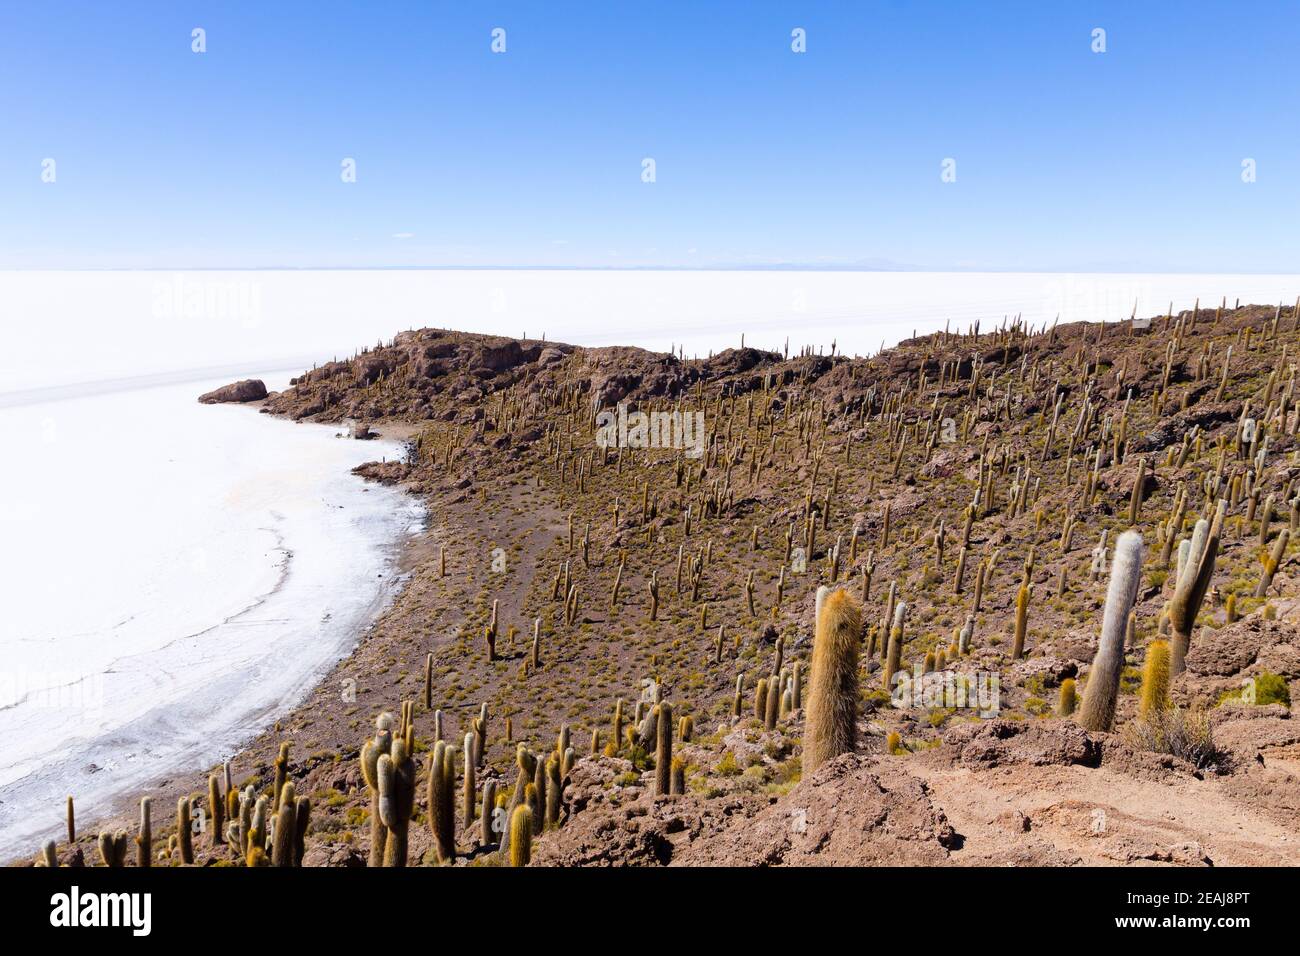 Salar de Uyuni view from Isla Incahuasi Stock Photo